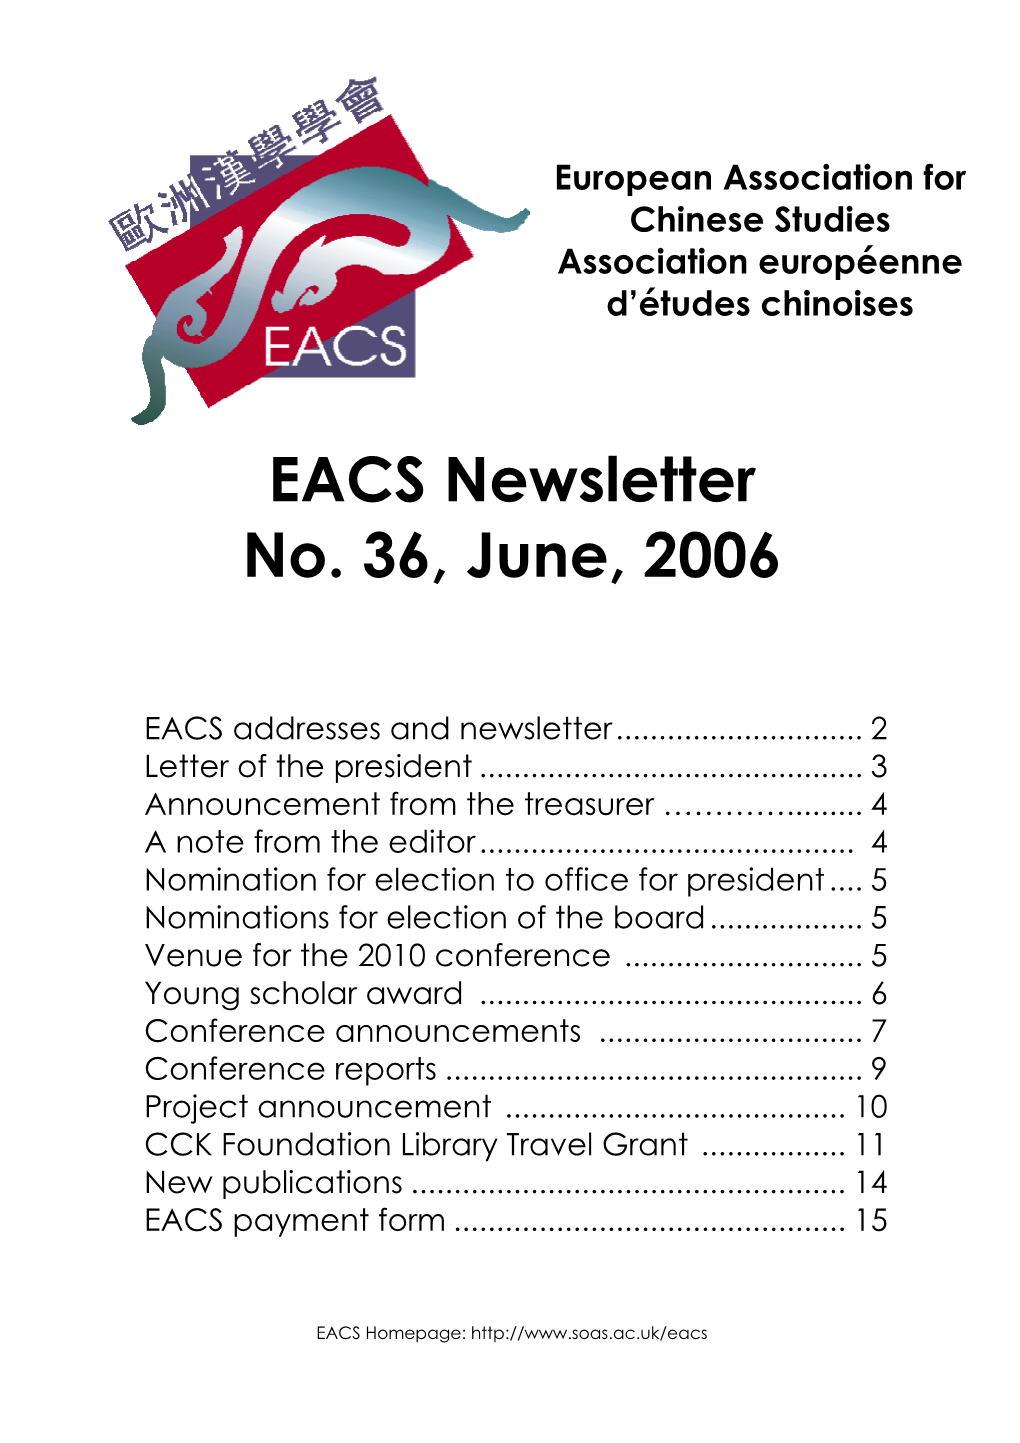 EACS Newsletter No. 36, June, 2006